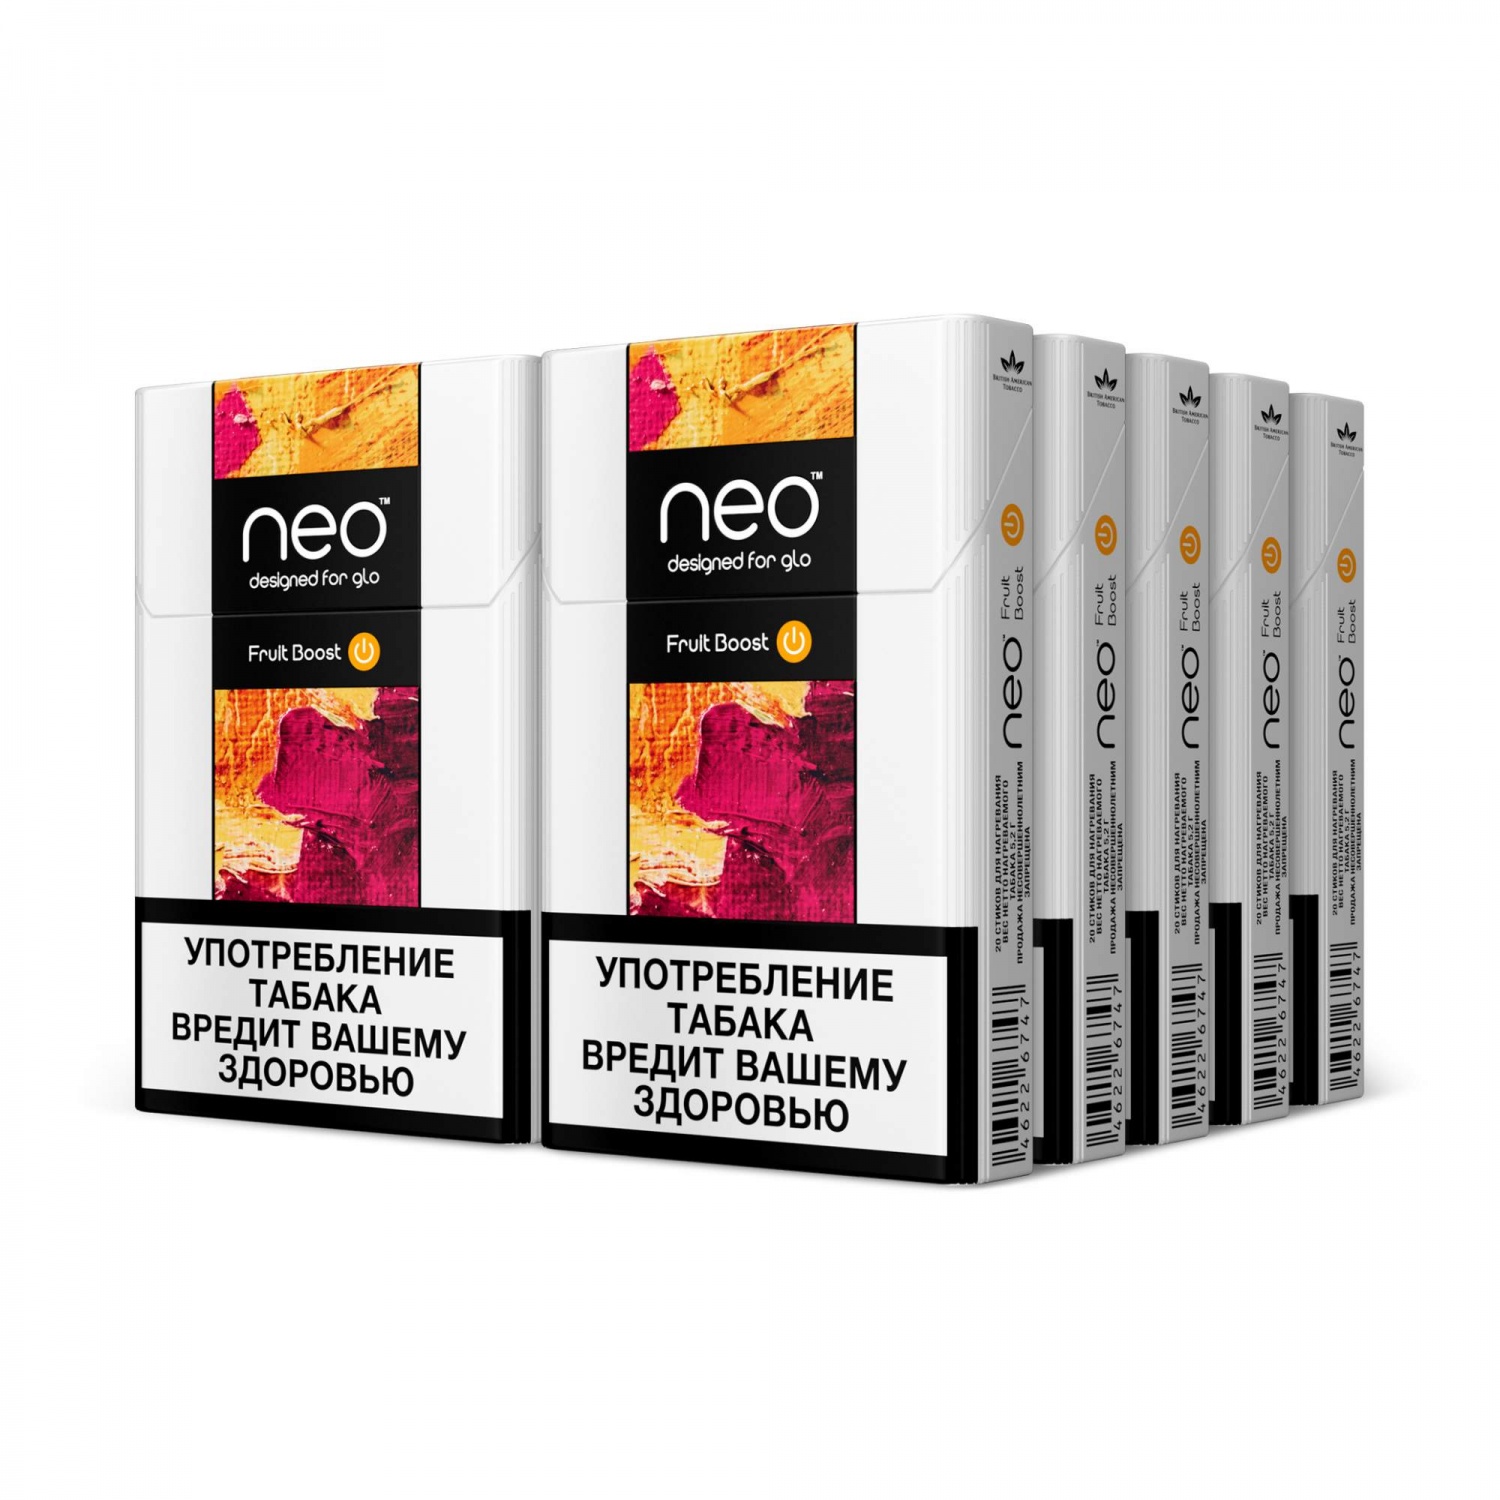 Стики для гло цена. Стики Neo для Glo вкусы. Табачные стики Neo Fruit Boost. Гло электронная сигарета стики. Стики Neo для Glo Pro.